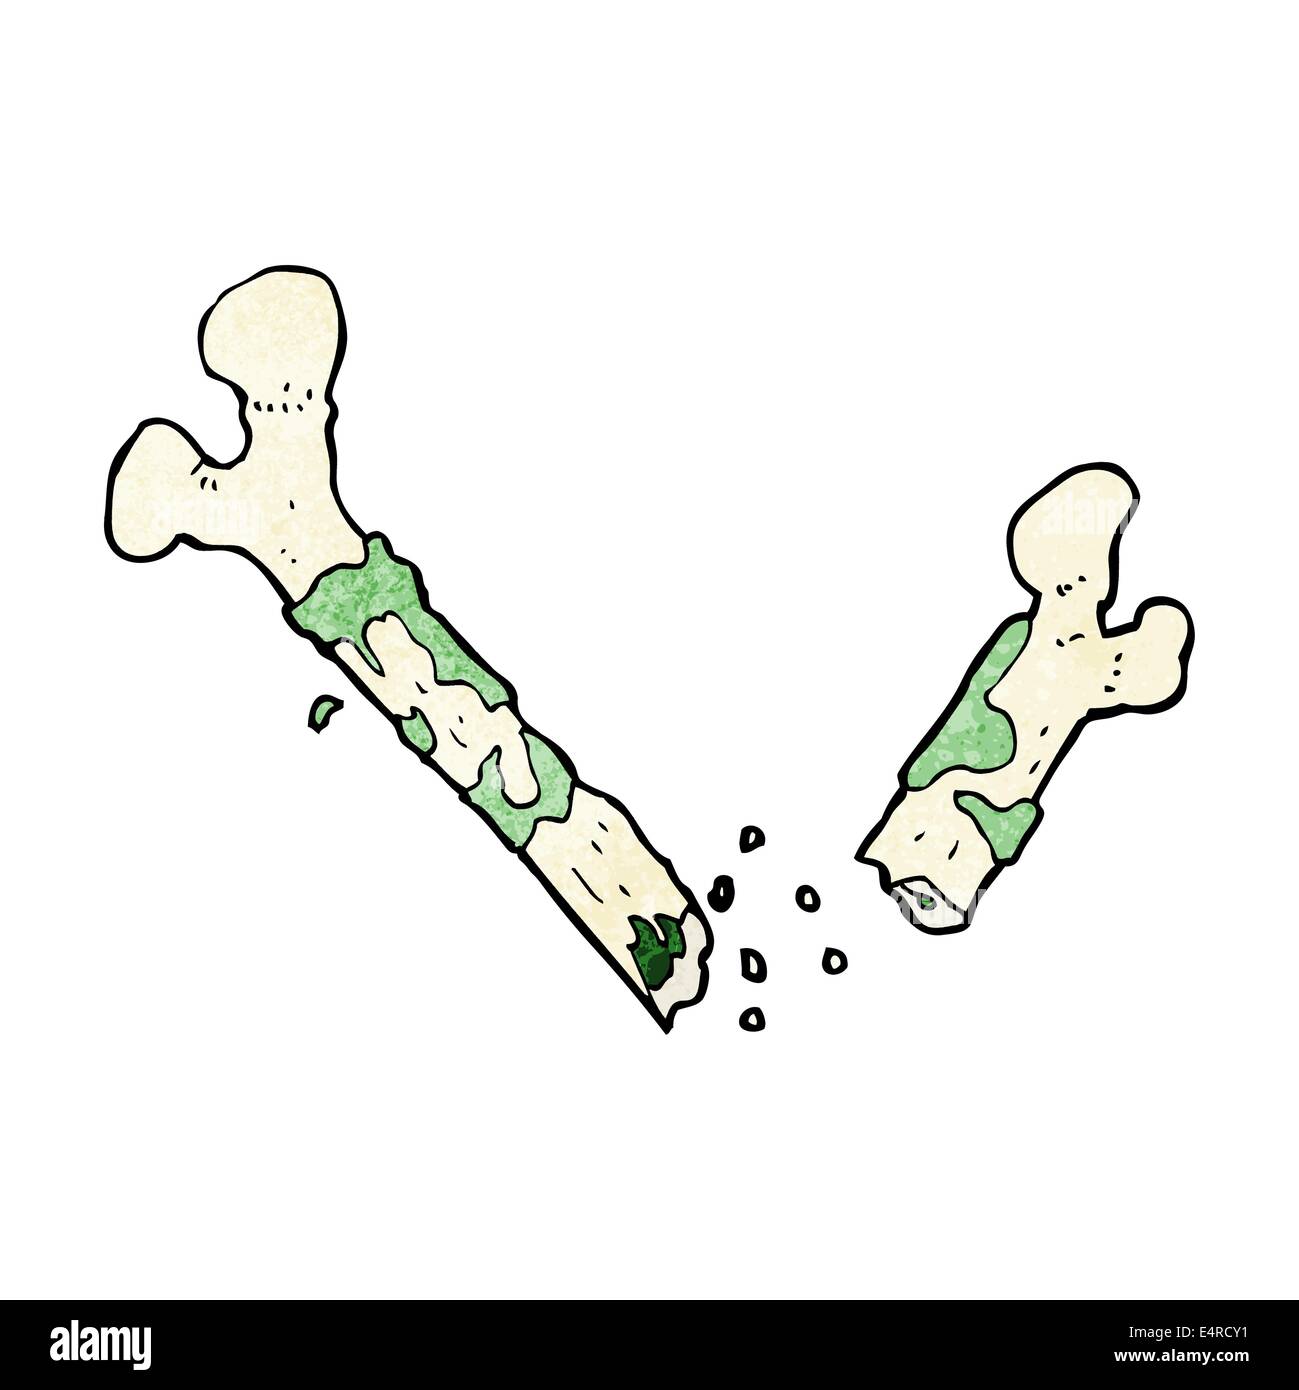 gross broken bone cartoon Stock Vector Image & Art - Alamy